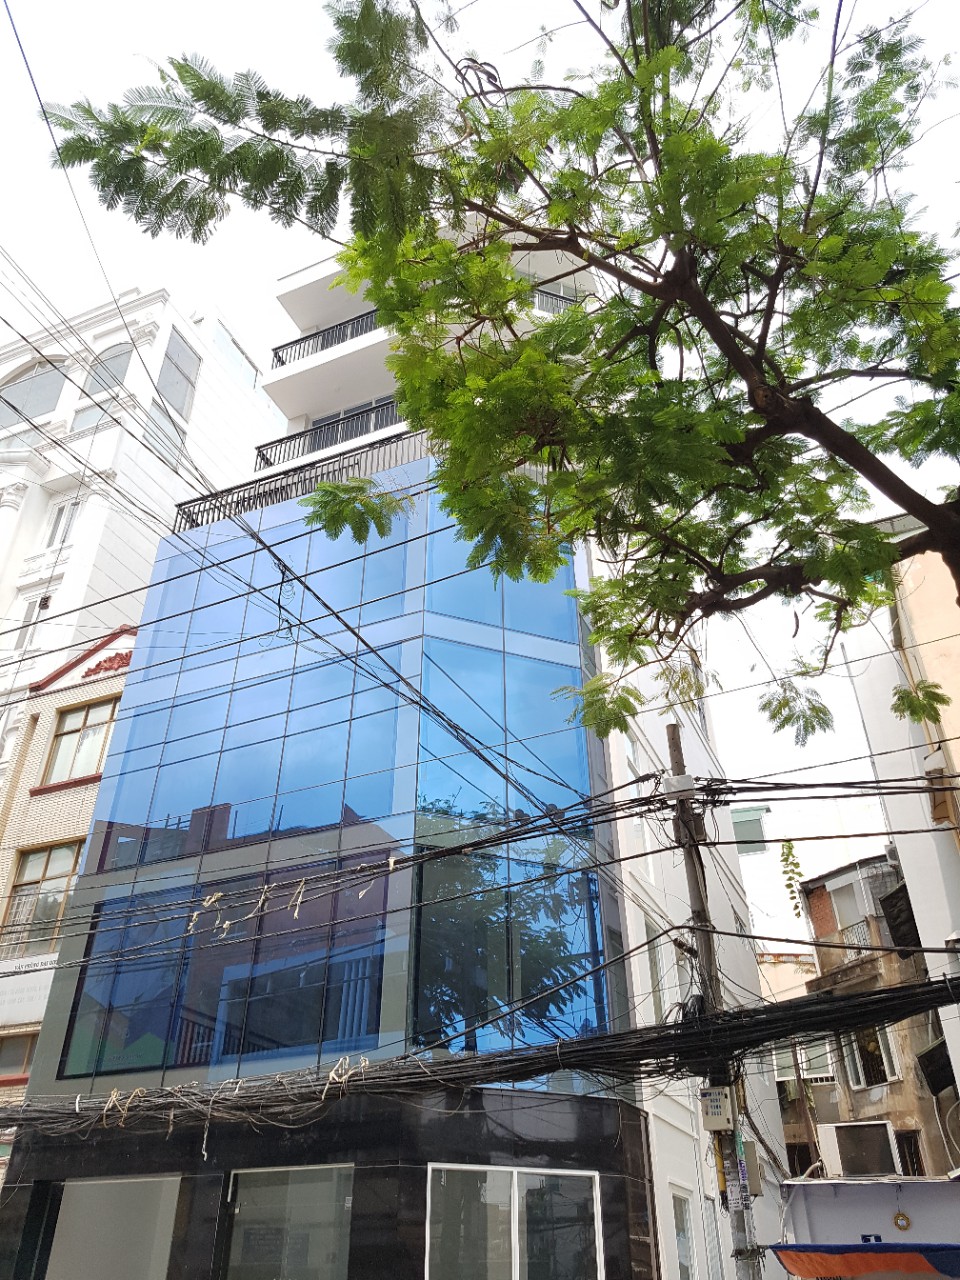 Bán nhà MT duy nhất tại phường Nguyễn Thái Bình, Quận 1. Trung tâm quận 1, có giá 22 tỷ, 5 tầng